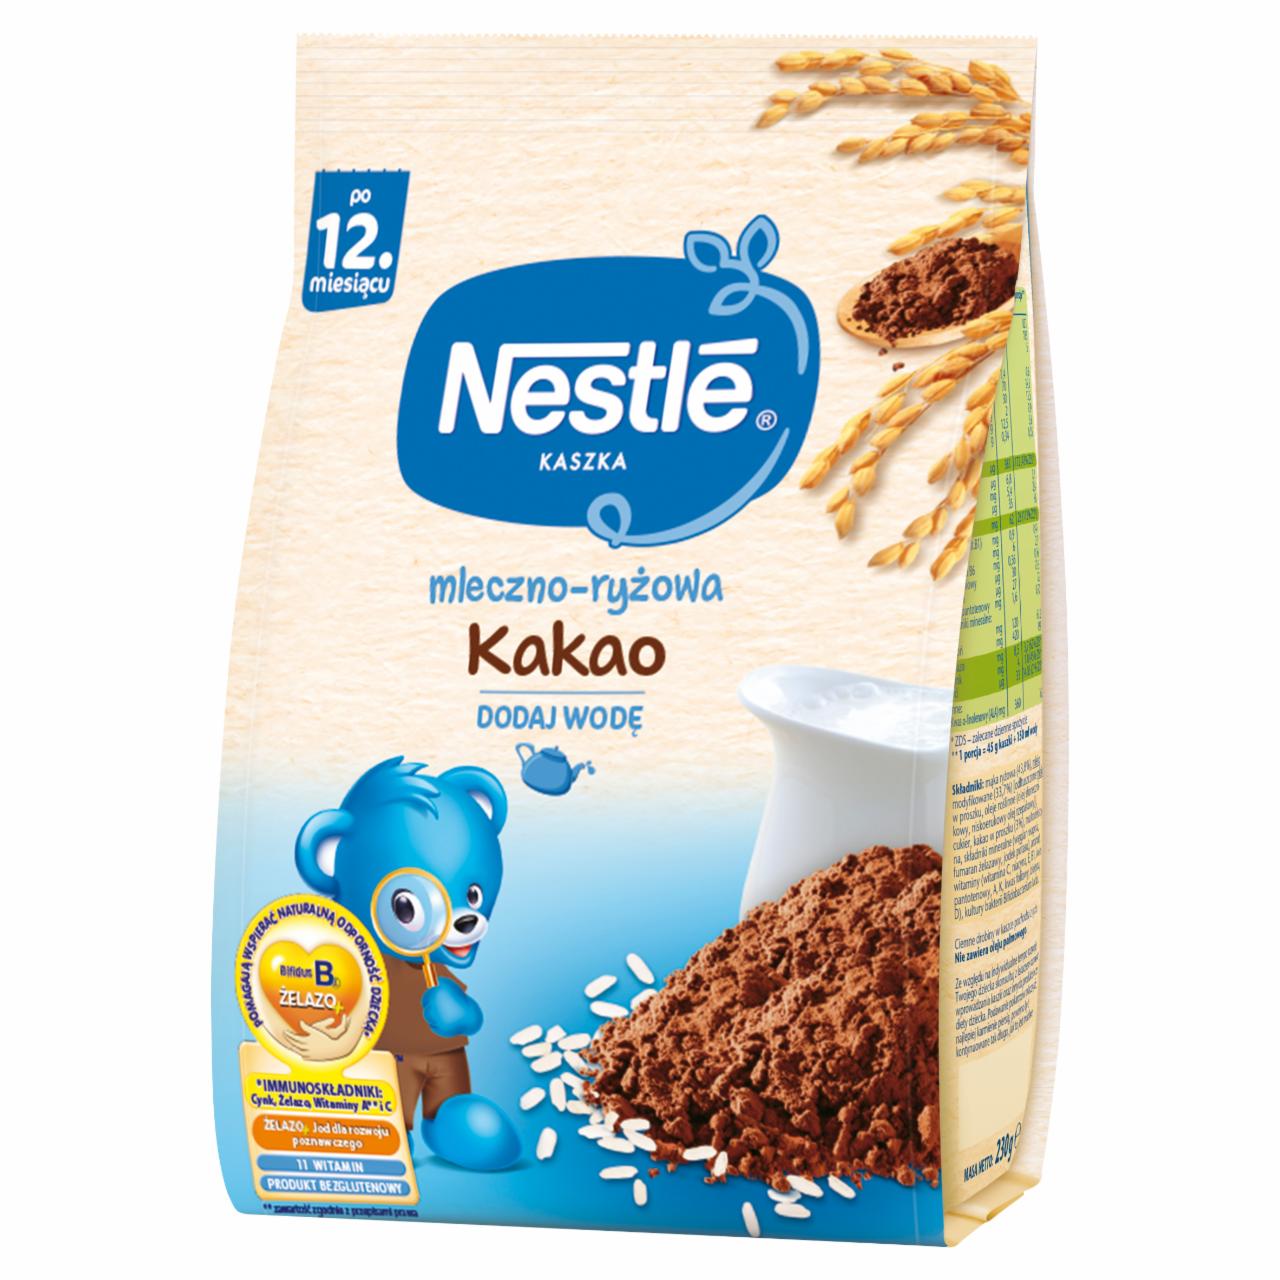 Фото - Kaszka mleczno-ryżowa kakao dla niemowląt po 12 miesiącu Nestle